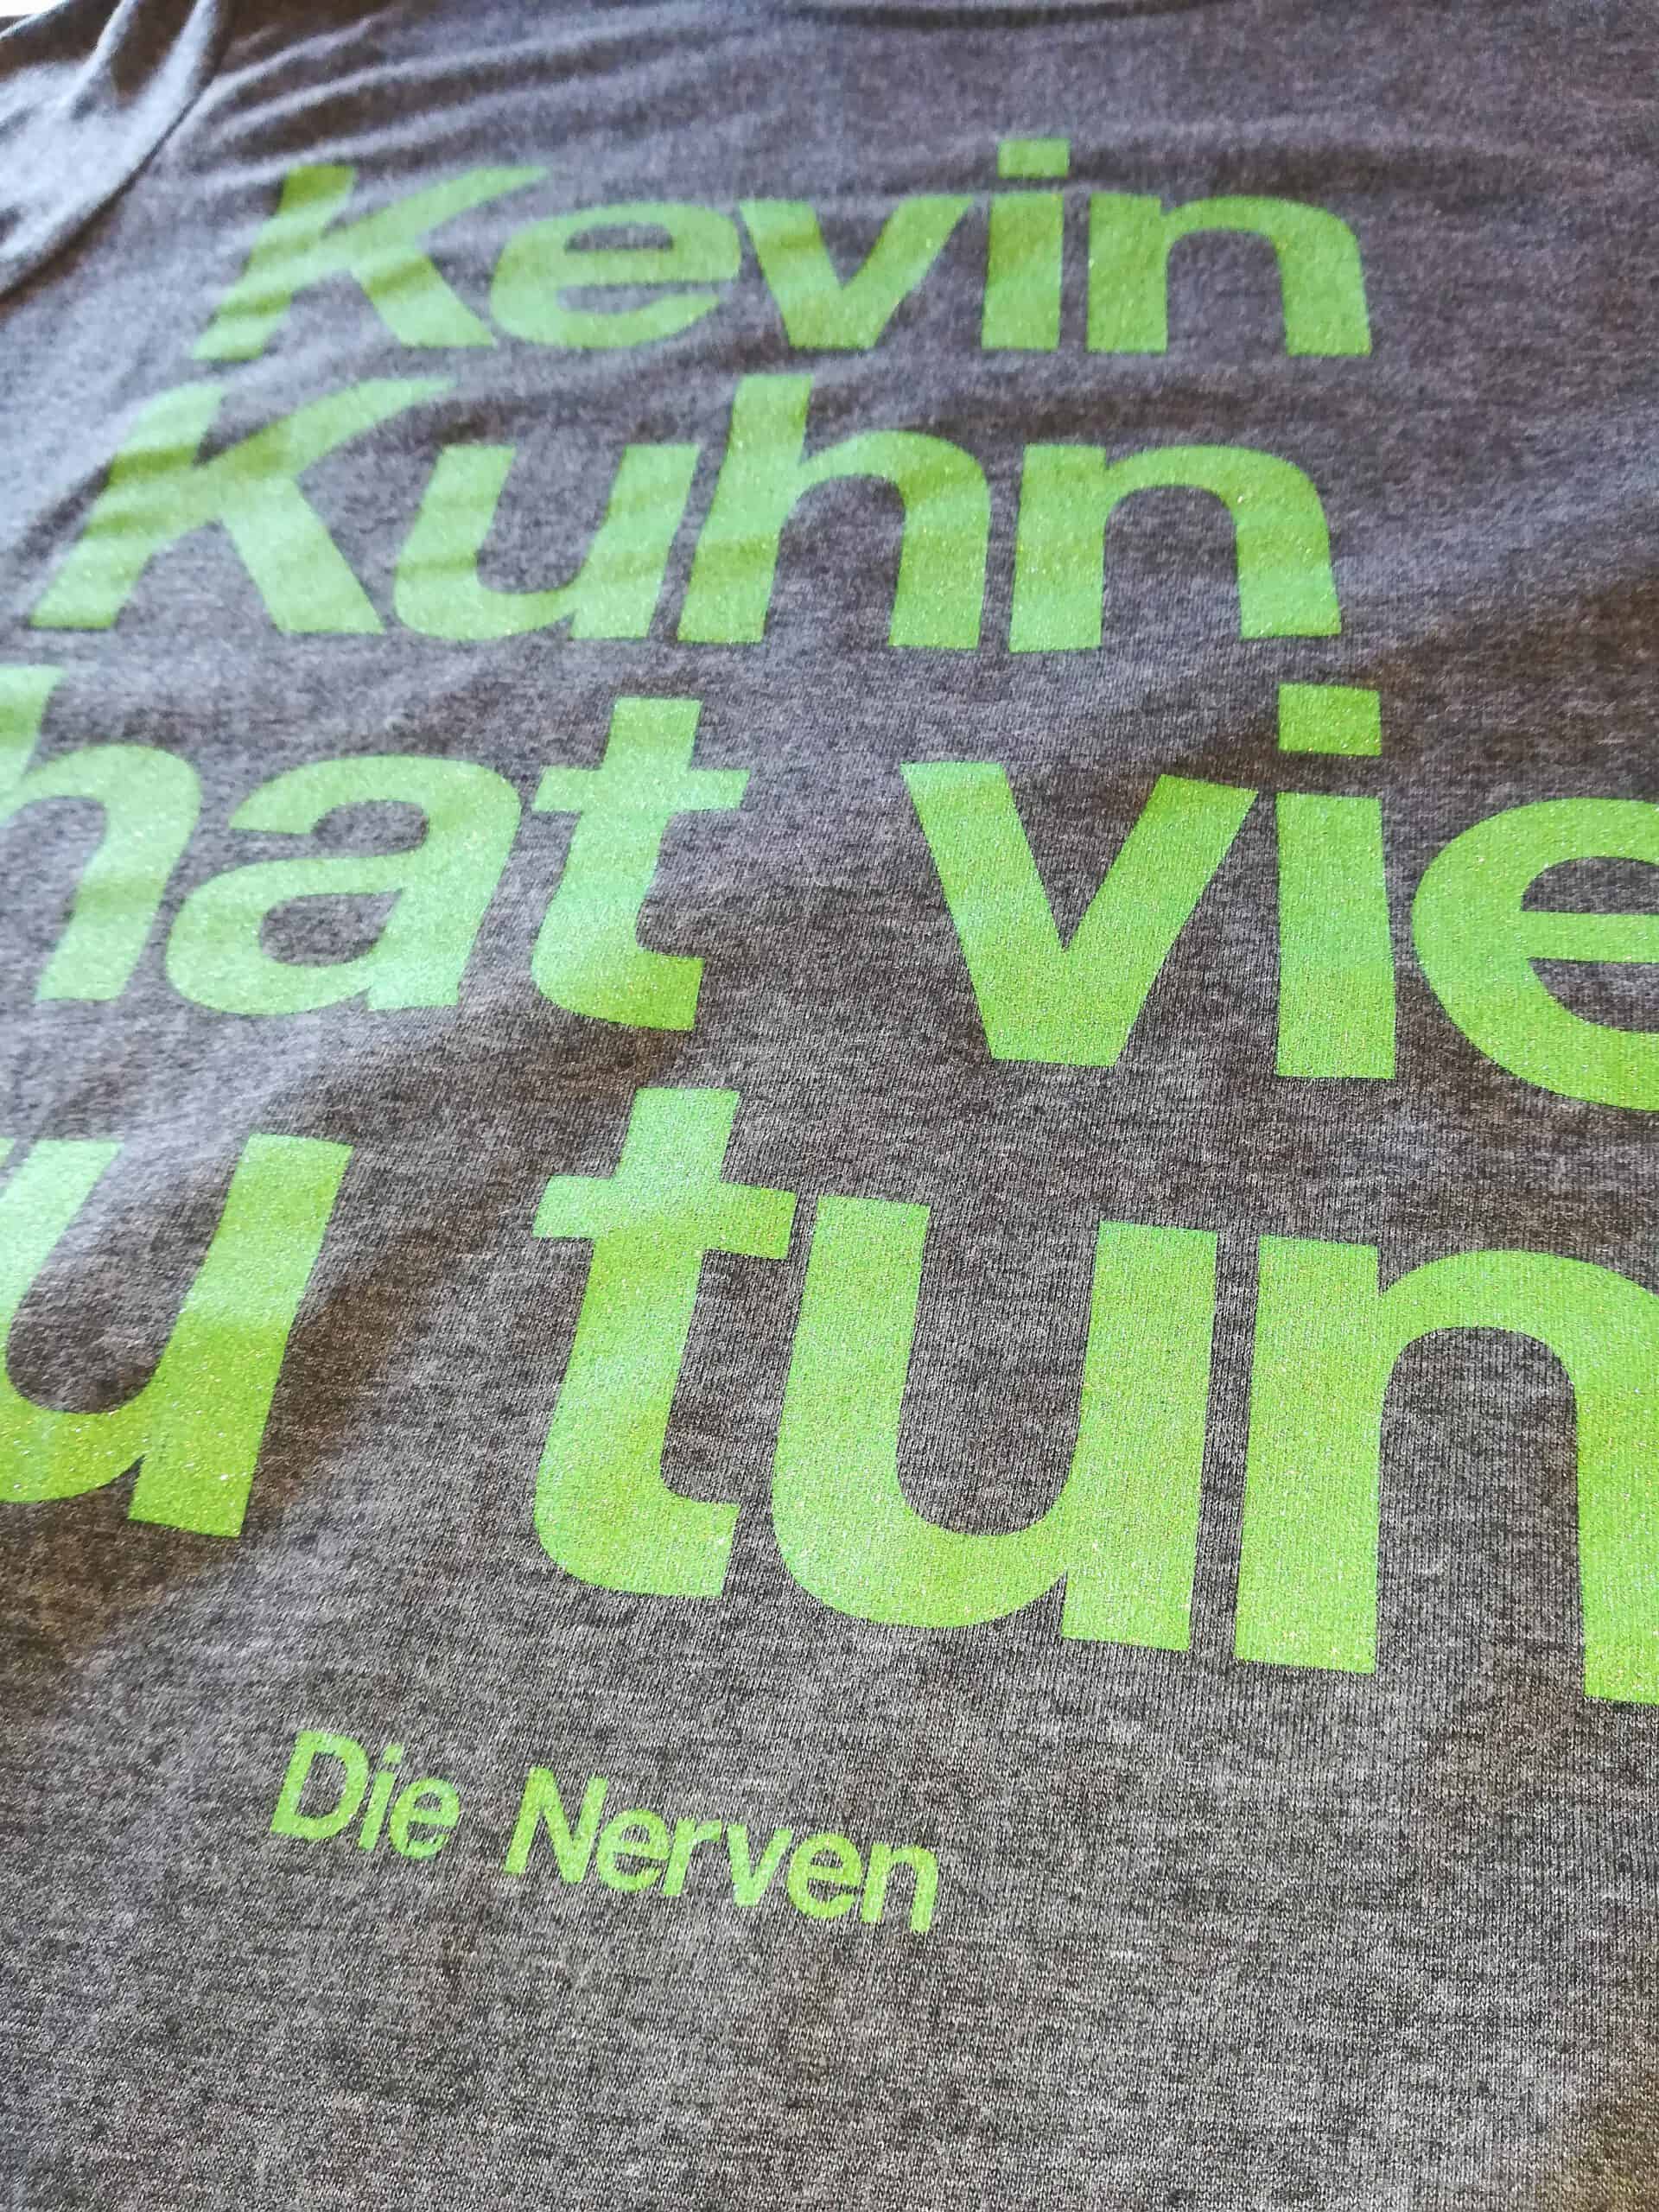 Die Nerven - Kevin Kuhn Shirt (green sparkling print) Das TCM-Die Nerven-Klassiker-Shirt in neuem Colourway! Limitiert auf 30 copies! Die Nerven - Kevin Kuhn Shirt mit grünem metallic Print!!